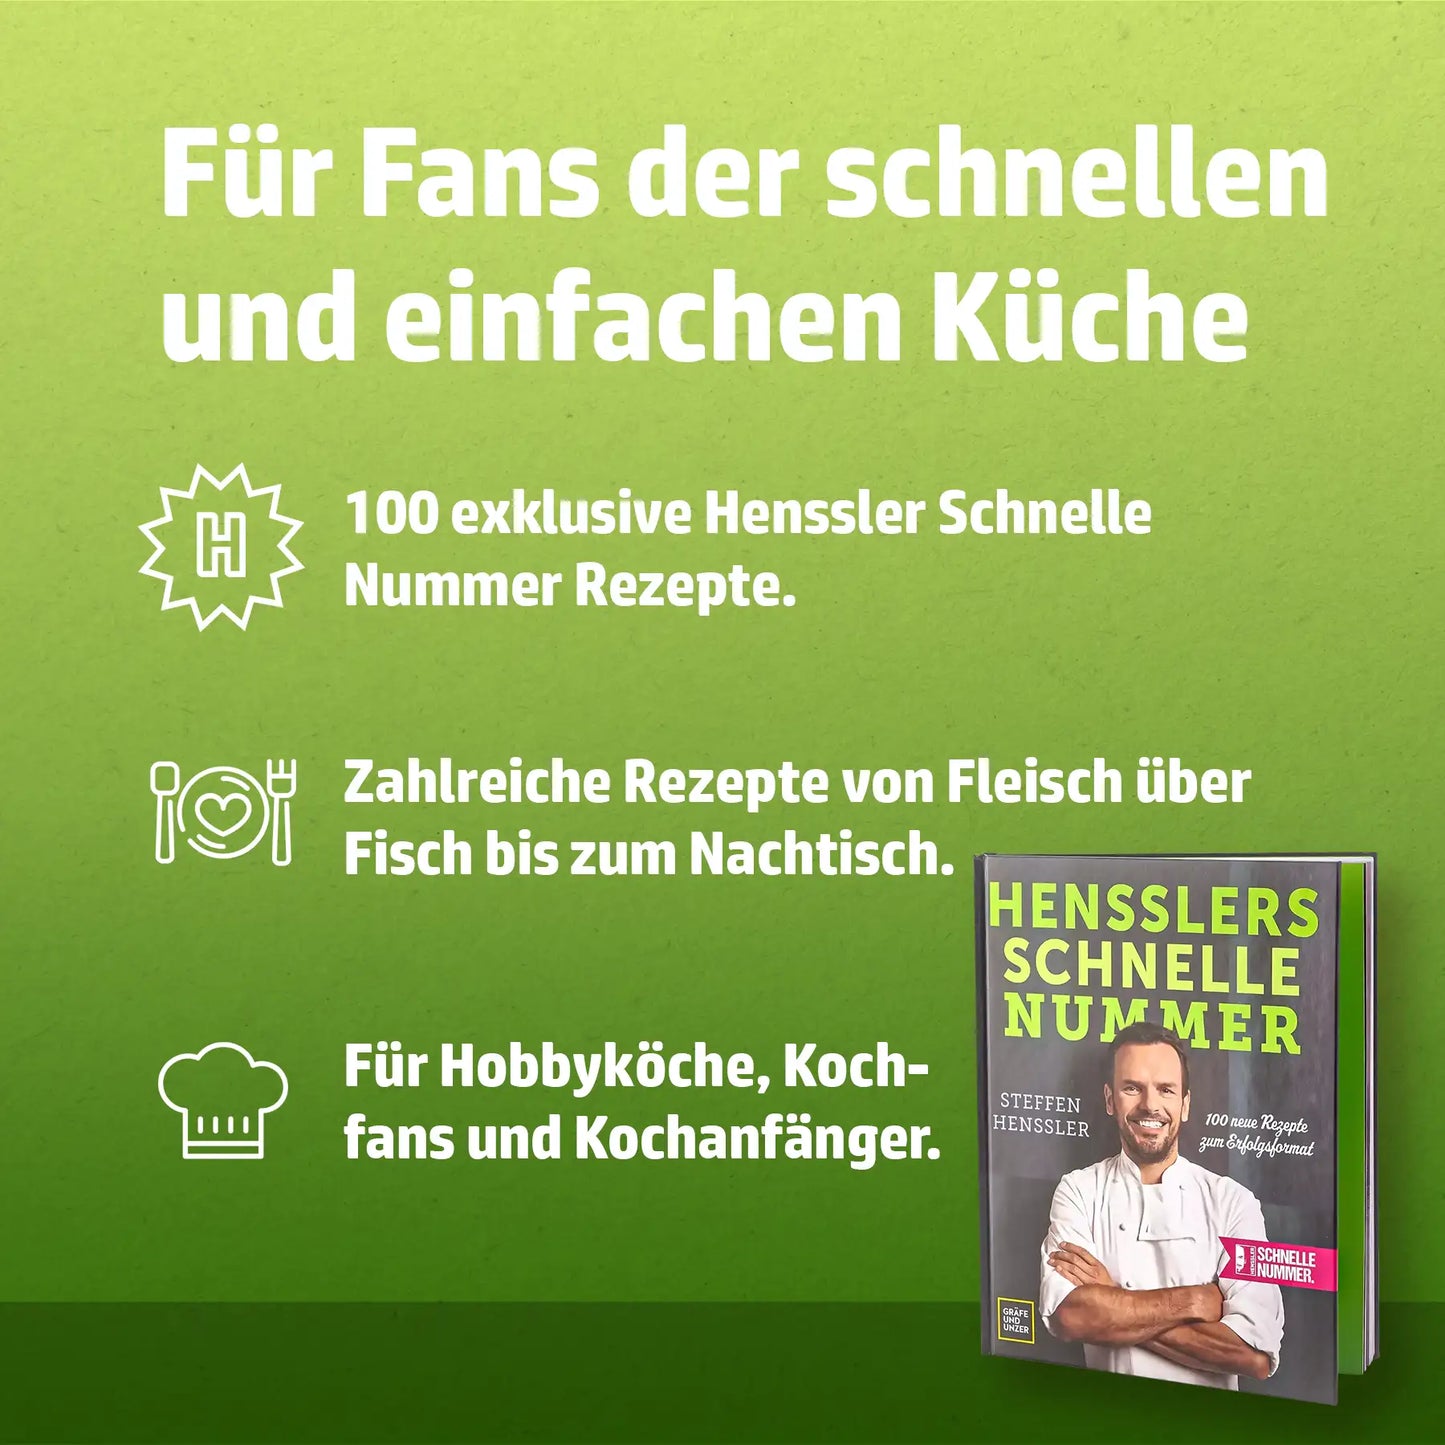 Hensslers Schnelle Nummer - Das Buch online kaufen